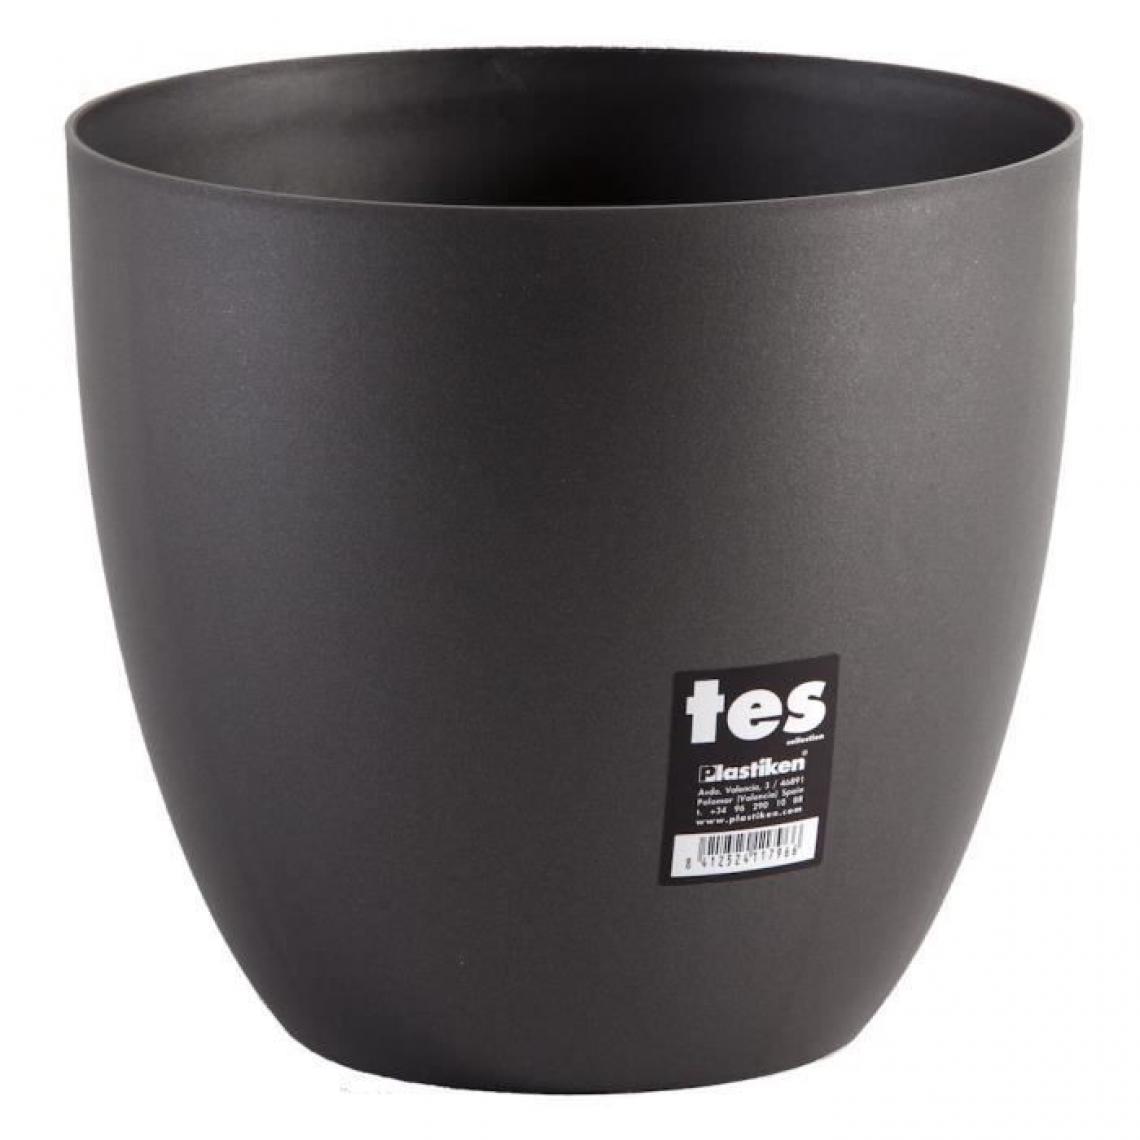 Plastiken - PLASTIKEN Pot de fleurs bol Tes - 22 cm - Anthracite - Pots, cache-pots